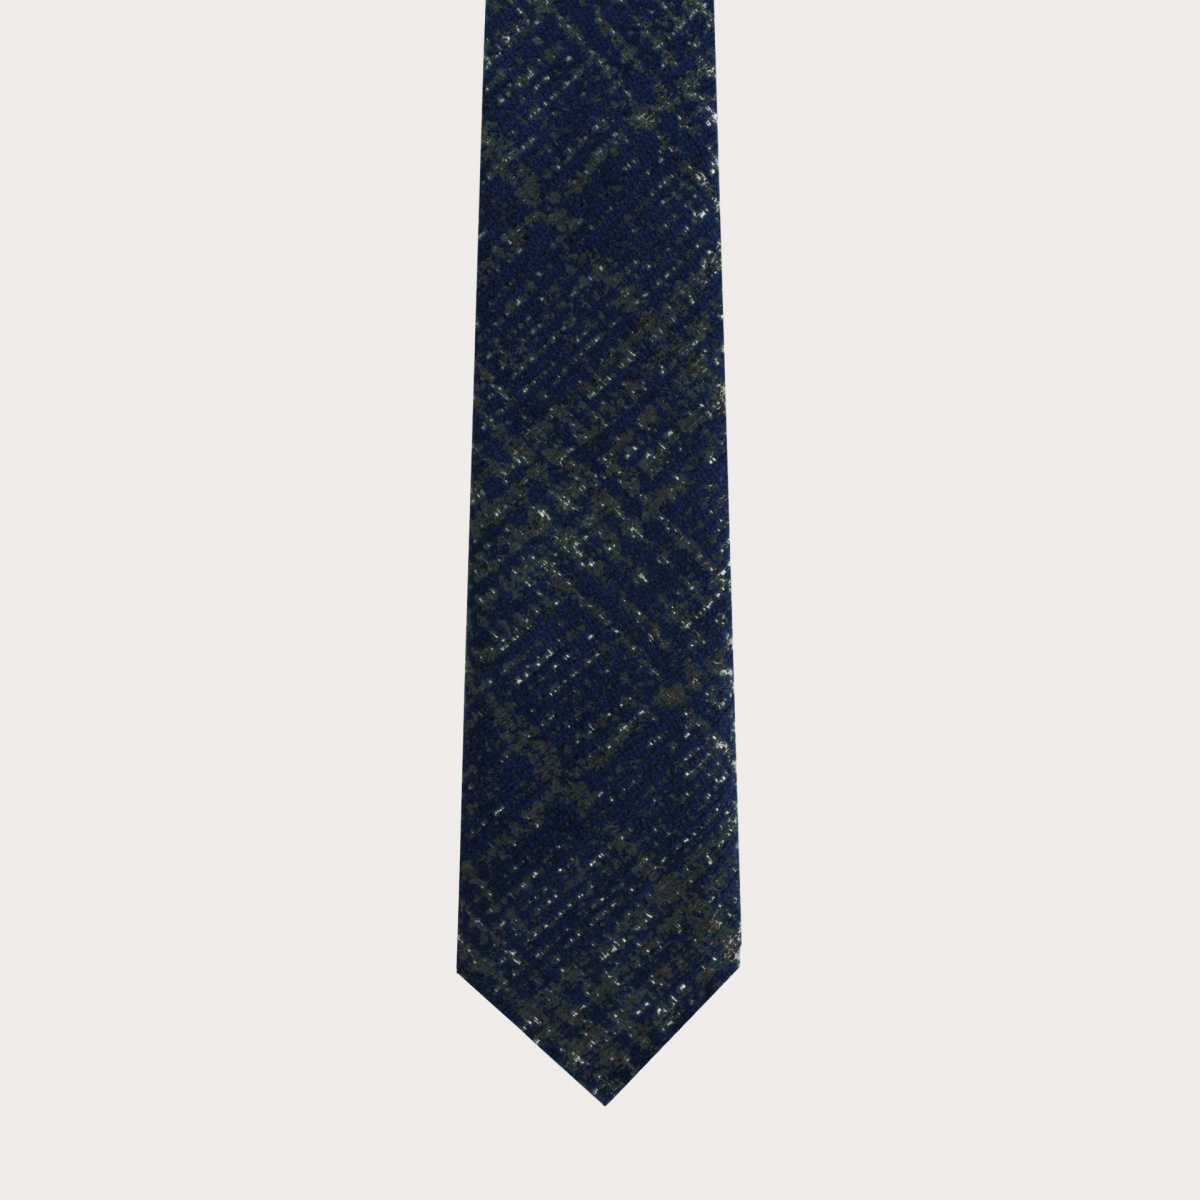 Corbata sin forro en lana y seda, tartán azul y verde